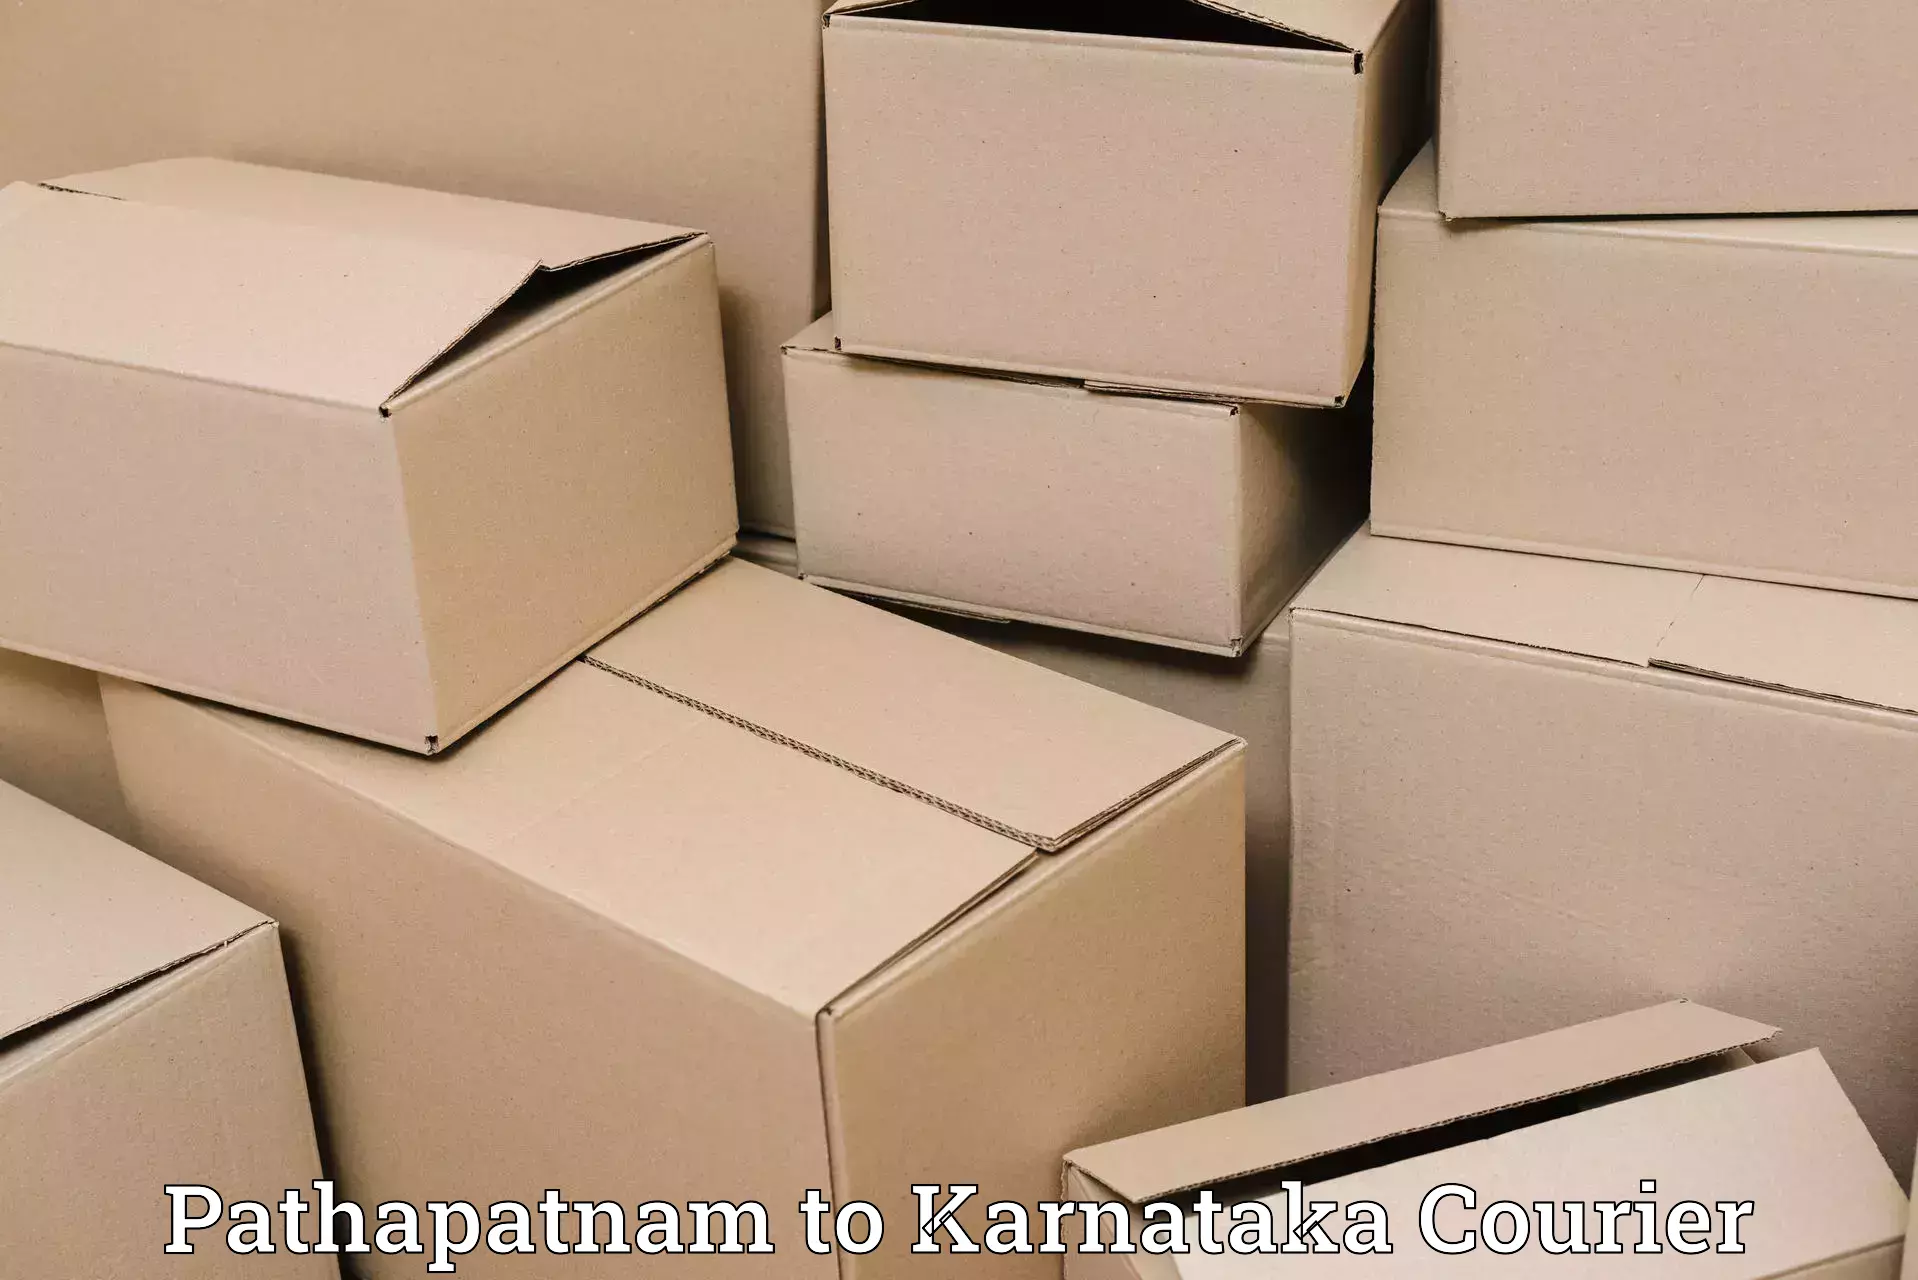 Secure packaging Pathapatnam to Karnataka